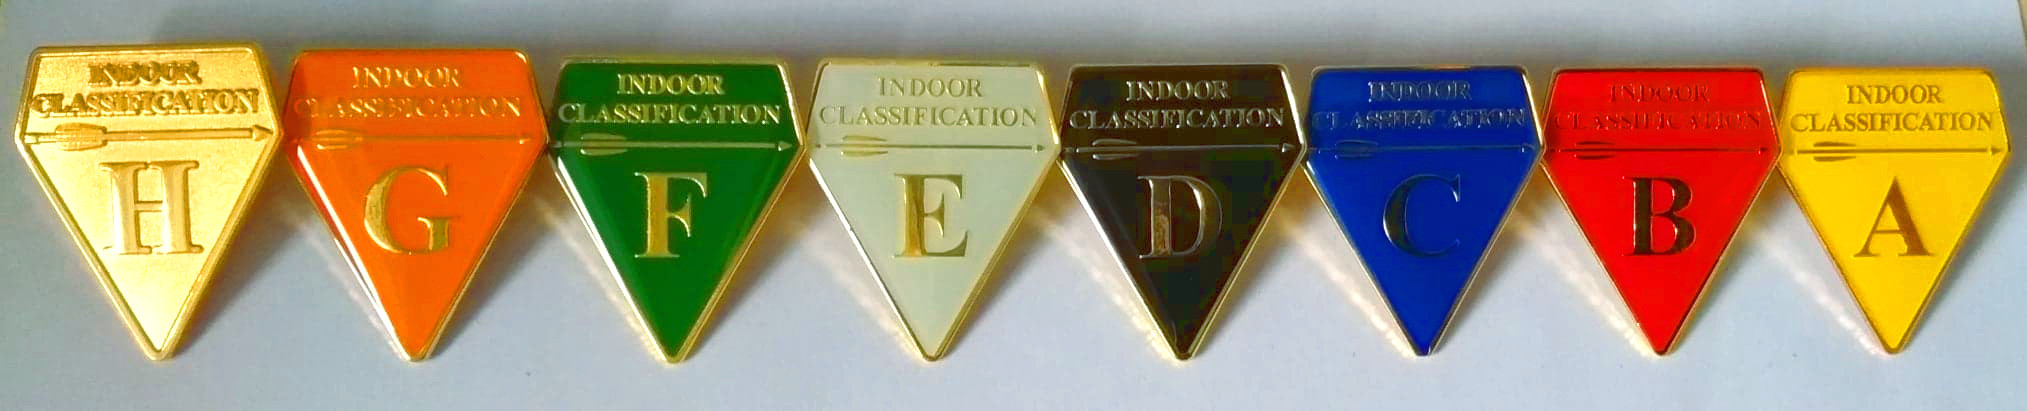 Indoor Classification Badges